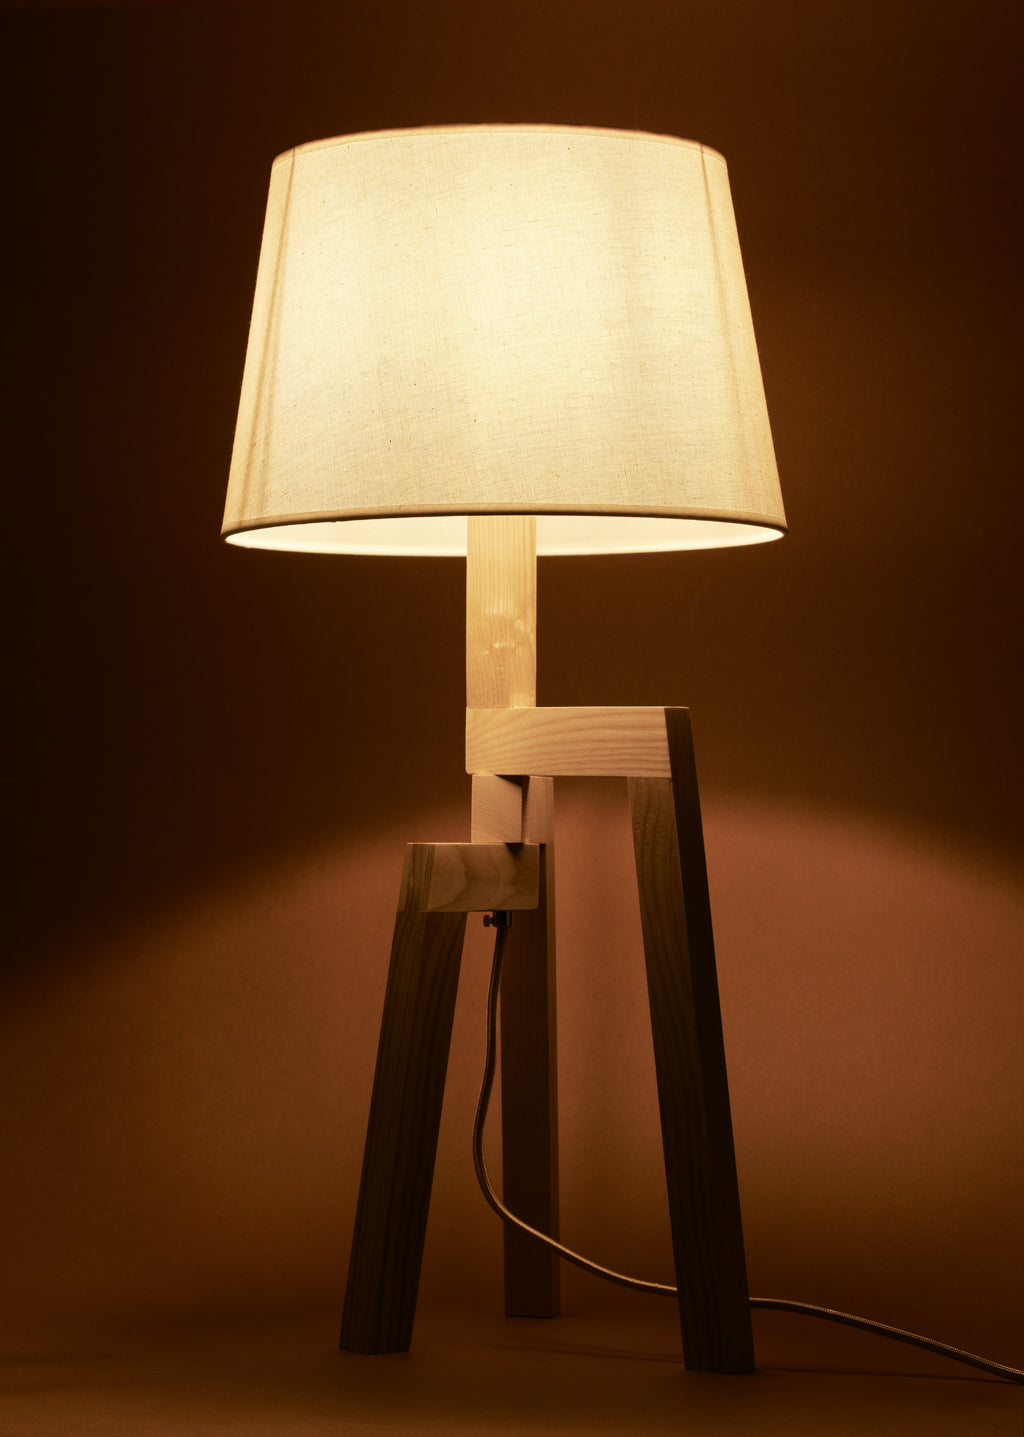 Lampe de table en bois